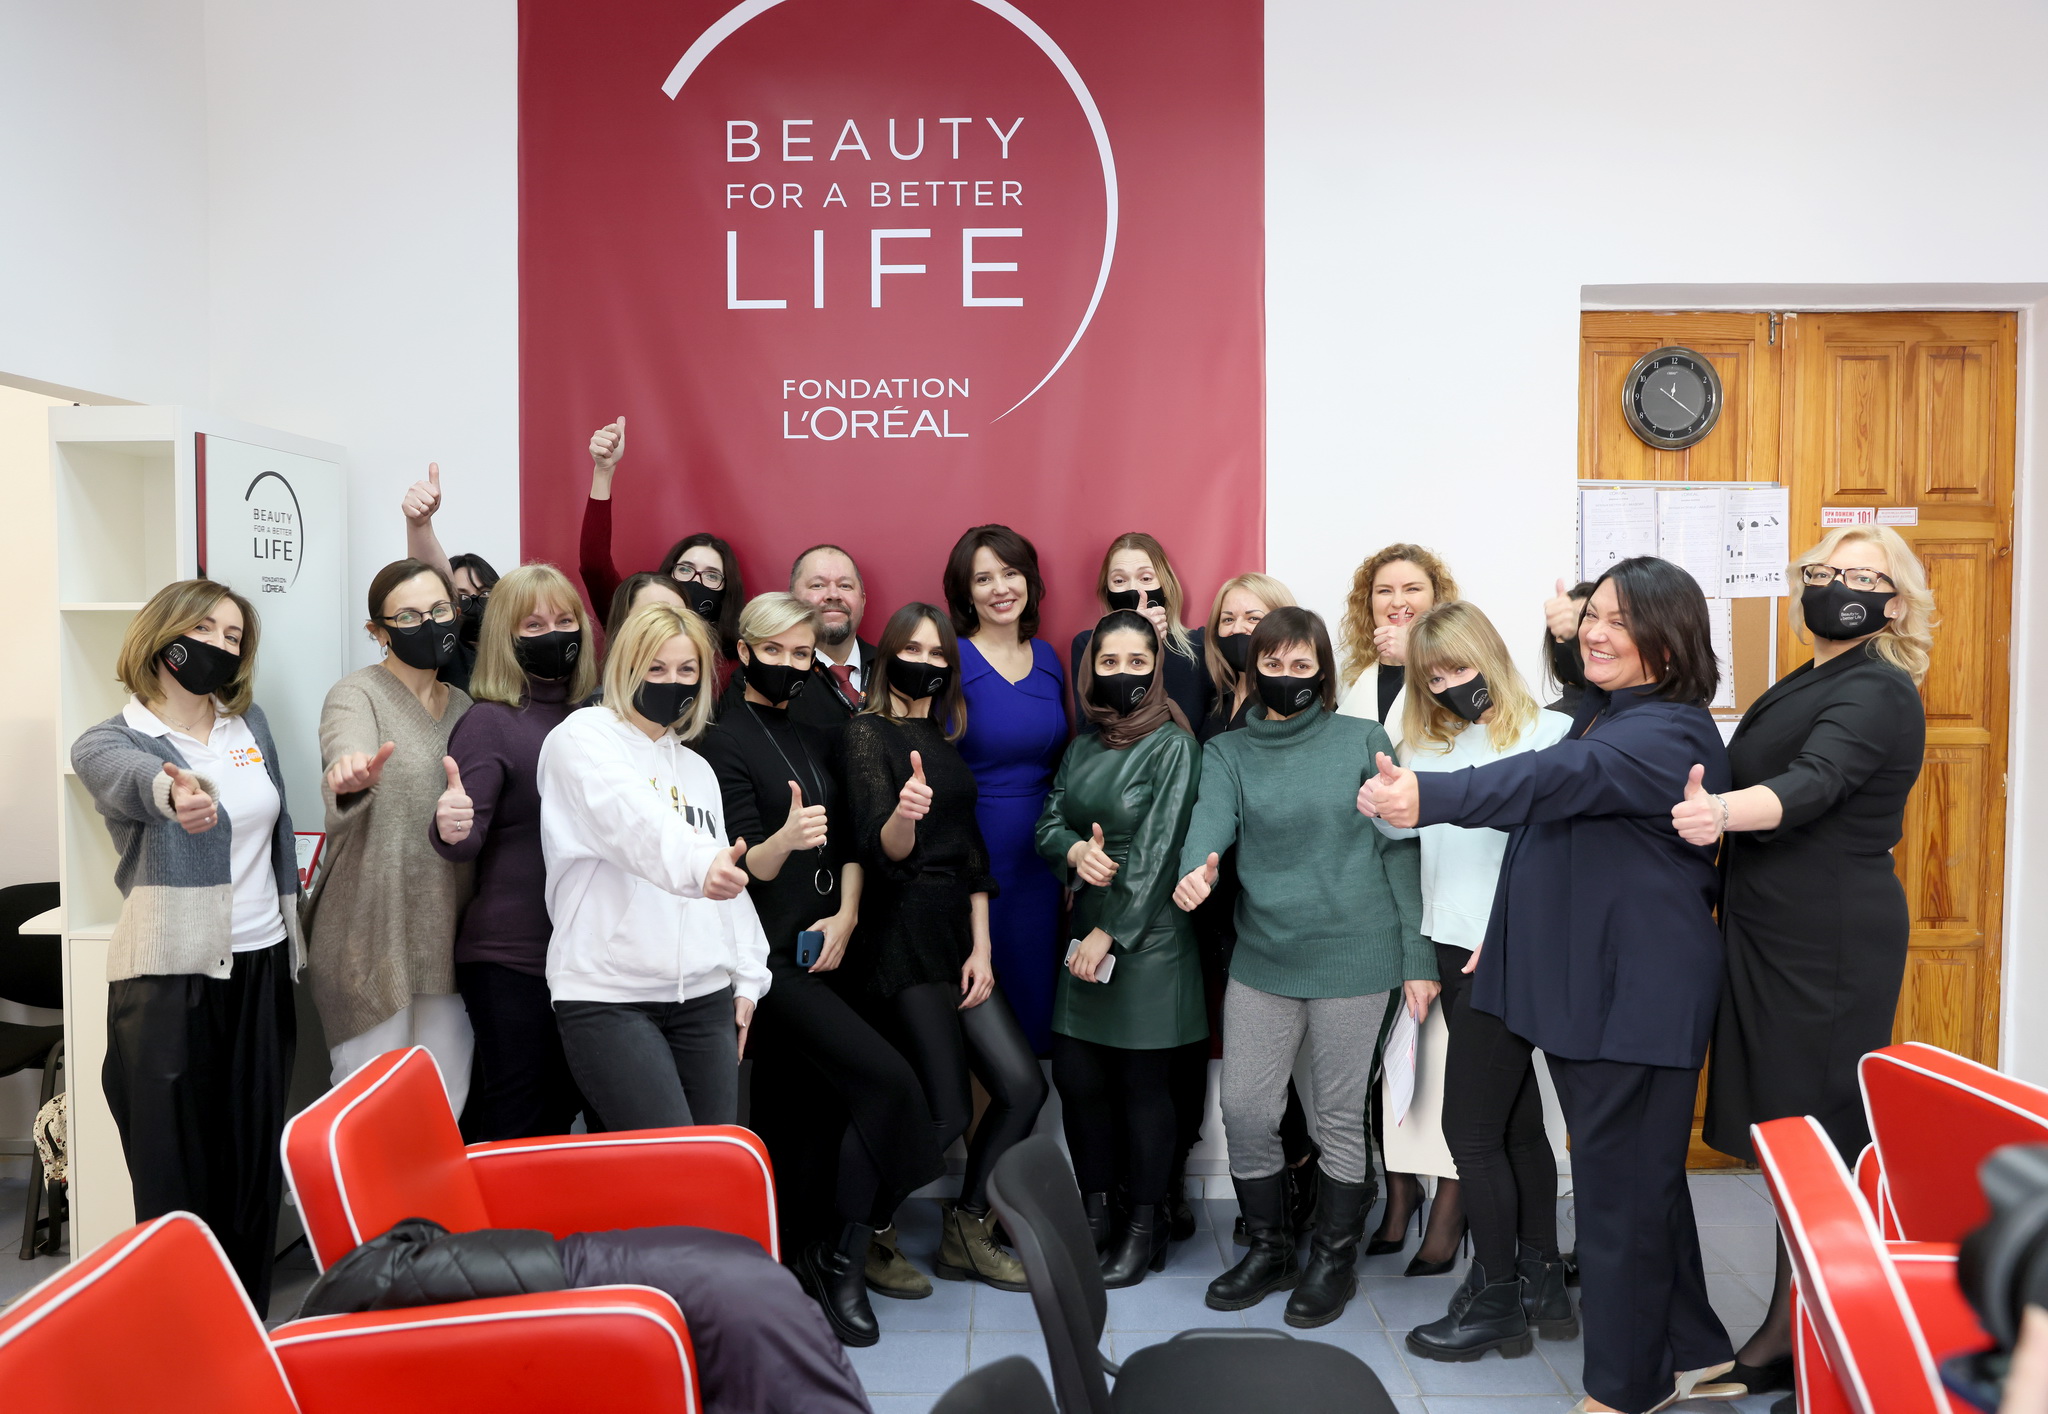 Пострадавшие от домашнего насилия женщины могут пройти в Киеве парикмахерские курсы